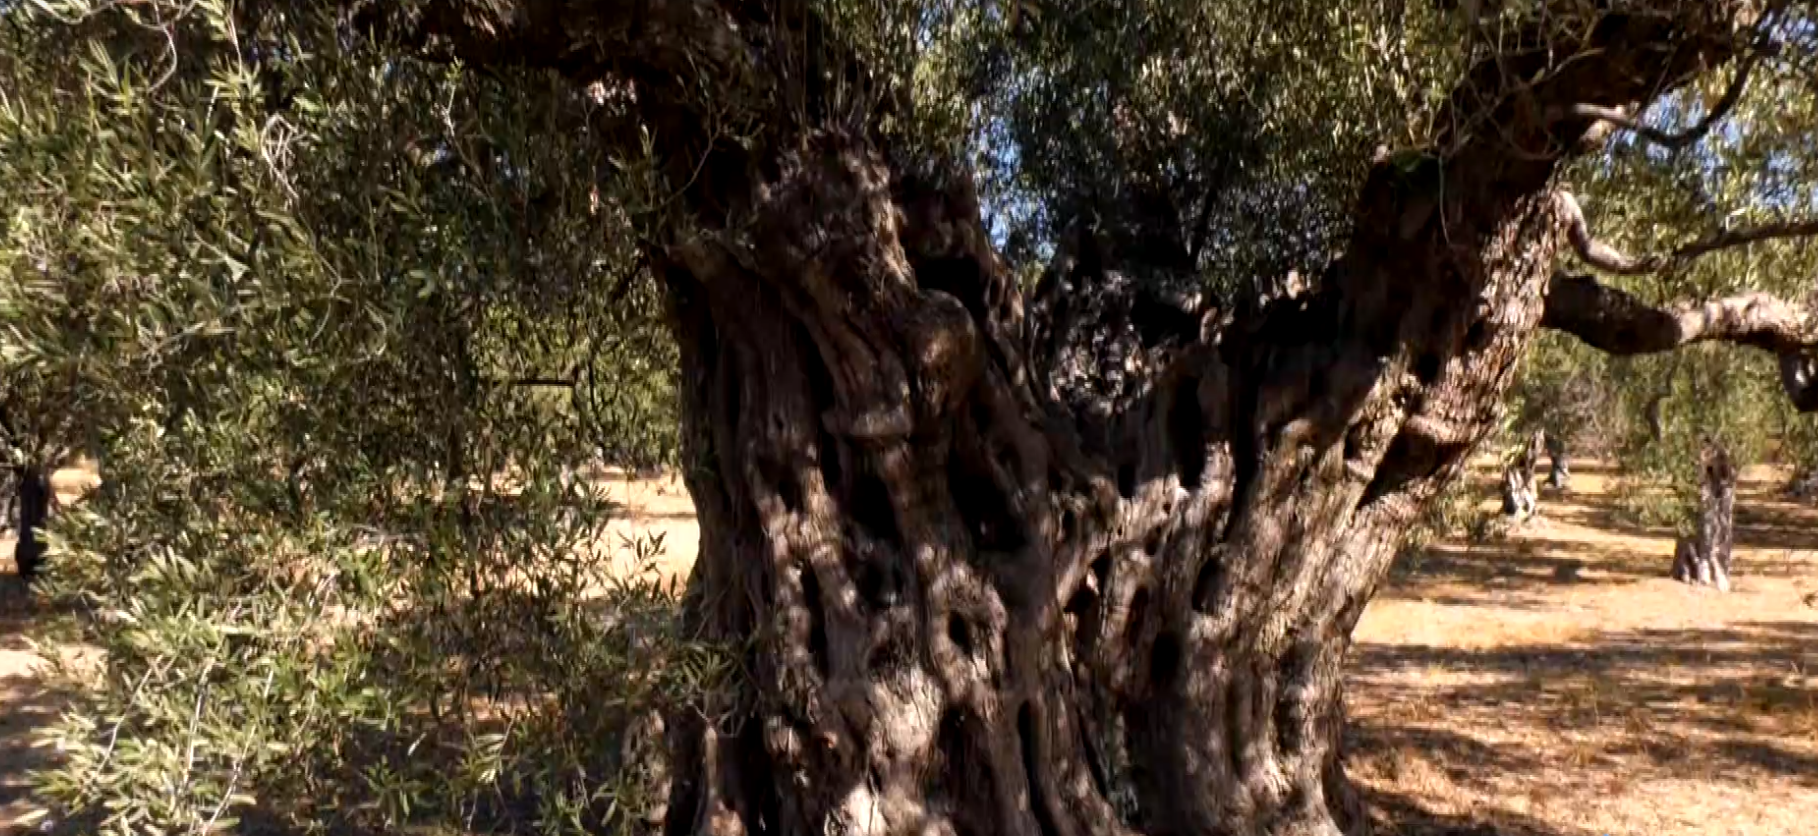 Ο πανάρχαιος ελαιώνας της Μάκρης: Ένας μοναδικός τόπος με δέντρα 2.500 ετών που προκαλεί δέος